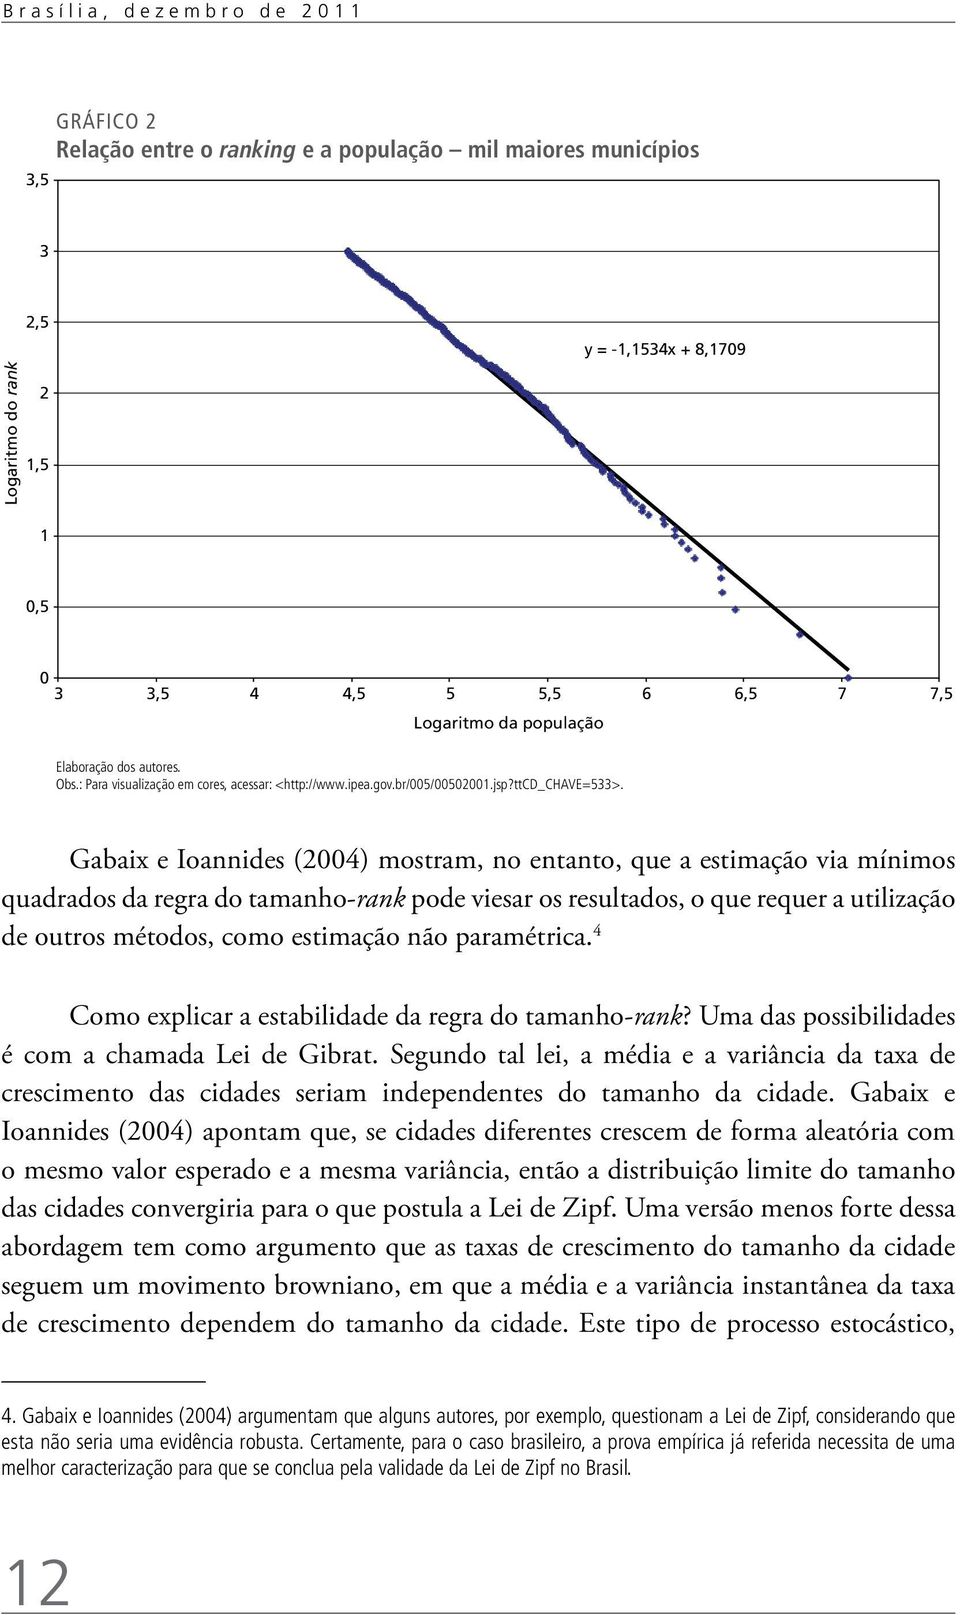 Gabaix e Ioannides (2004) mostram, no entanto, que a estimação via mínimos quadrados da regra do tamanho-rank pode viesar os resultados, o que requer a utilização de outros métodos, como estimação